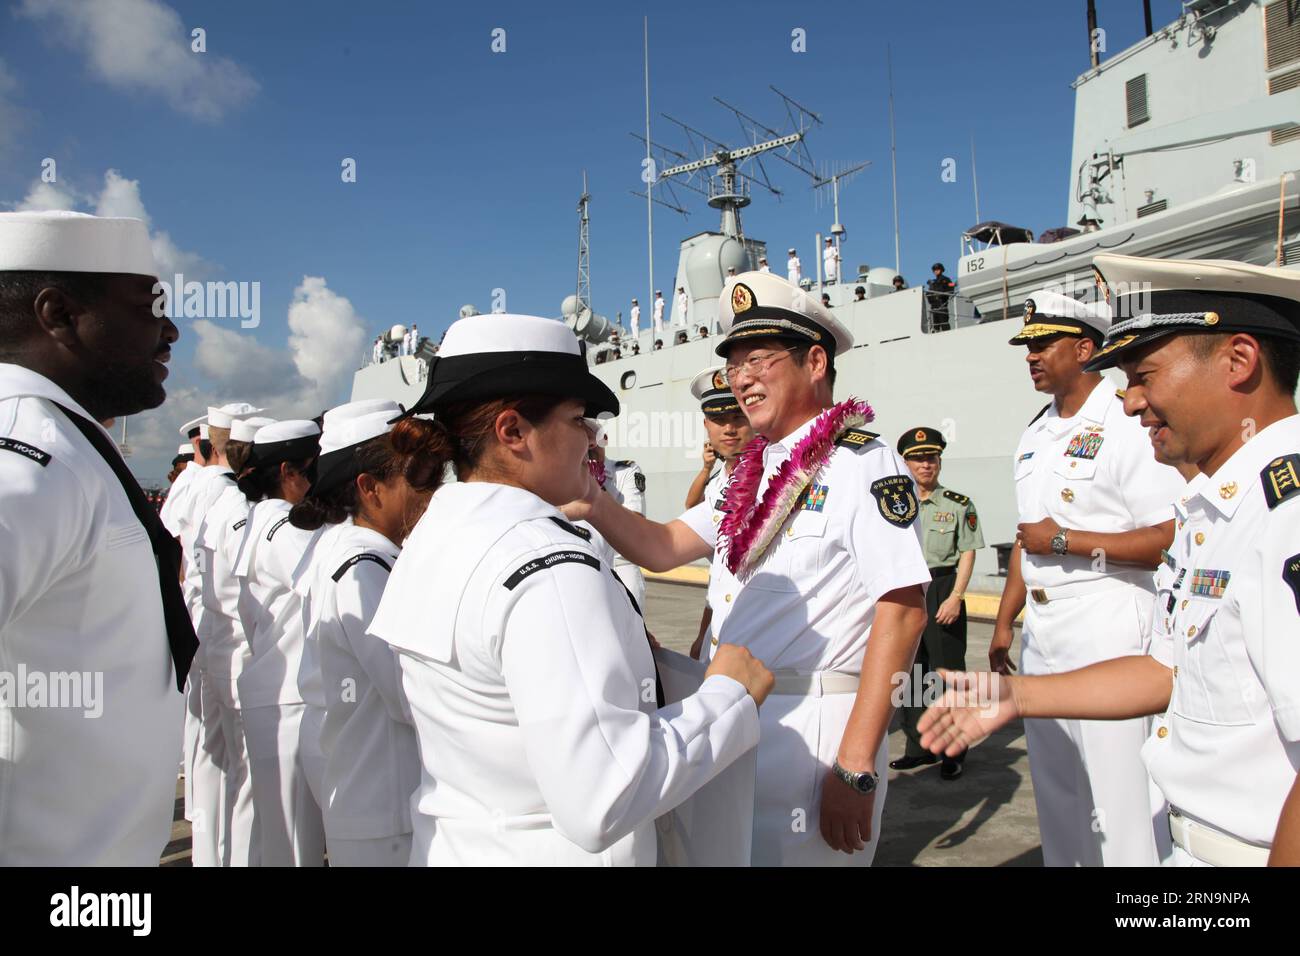 Des officiers d une flottille de la marine de l Armée populaire de libération chinoise sont accueillis à Pearl Harbor à Hawaii, aux États-Unis, le 13 décembre 2015. La flottille de la Marine de l Armée populaire de libération chinoise, qui comprend le destroyer Jinan , la frégate Yiyang et le navire de ravitaillement complet Qiandaohu , est arrivée dimanche à Pearl Harbor pour une visite amicale de cinq jours. US-HAWAII-FLOTTILLE CHINOISE-VISITE XuexYing PUBLICATIONxNOTxINxCHN officiers d'une flottille des célébrités chinoises S Liberation Army Navy sont accueillis À Pearl Harbor à Hawaii les États-Unis DEC 13 2015 la flottille du Chi Banque D'Images